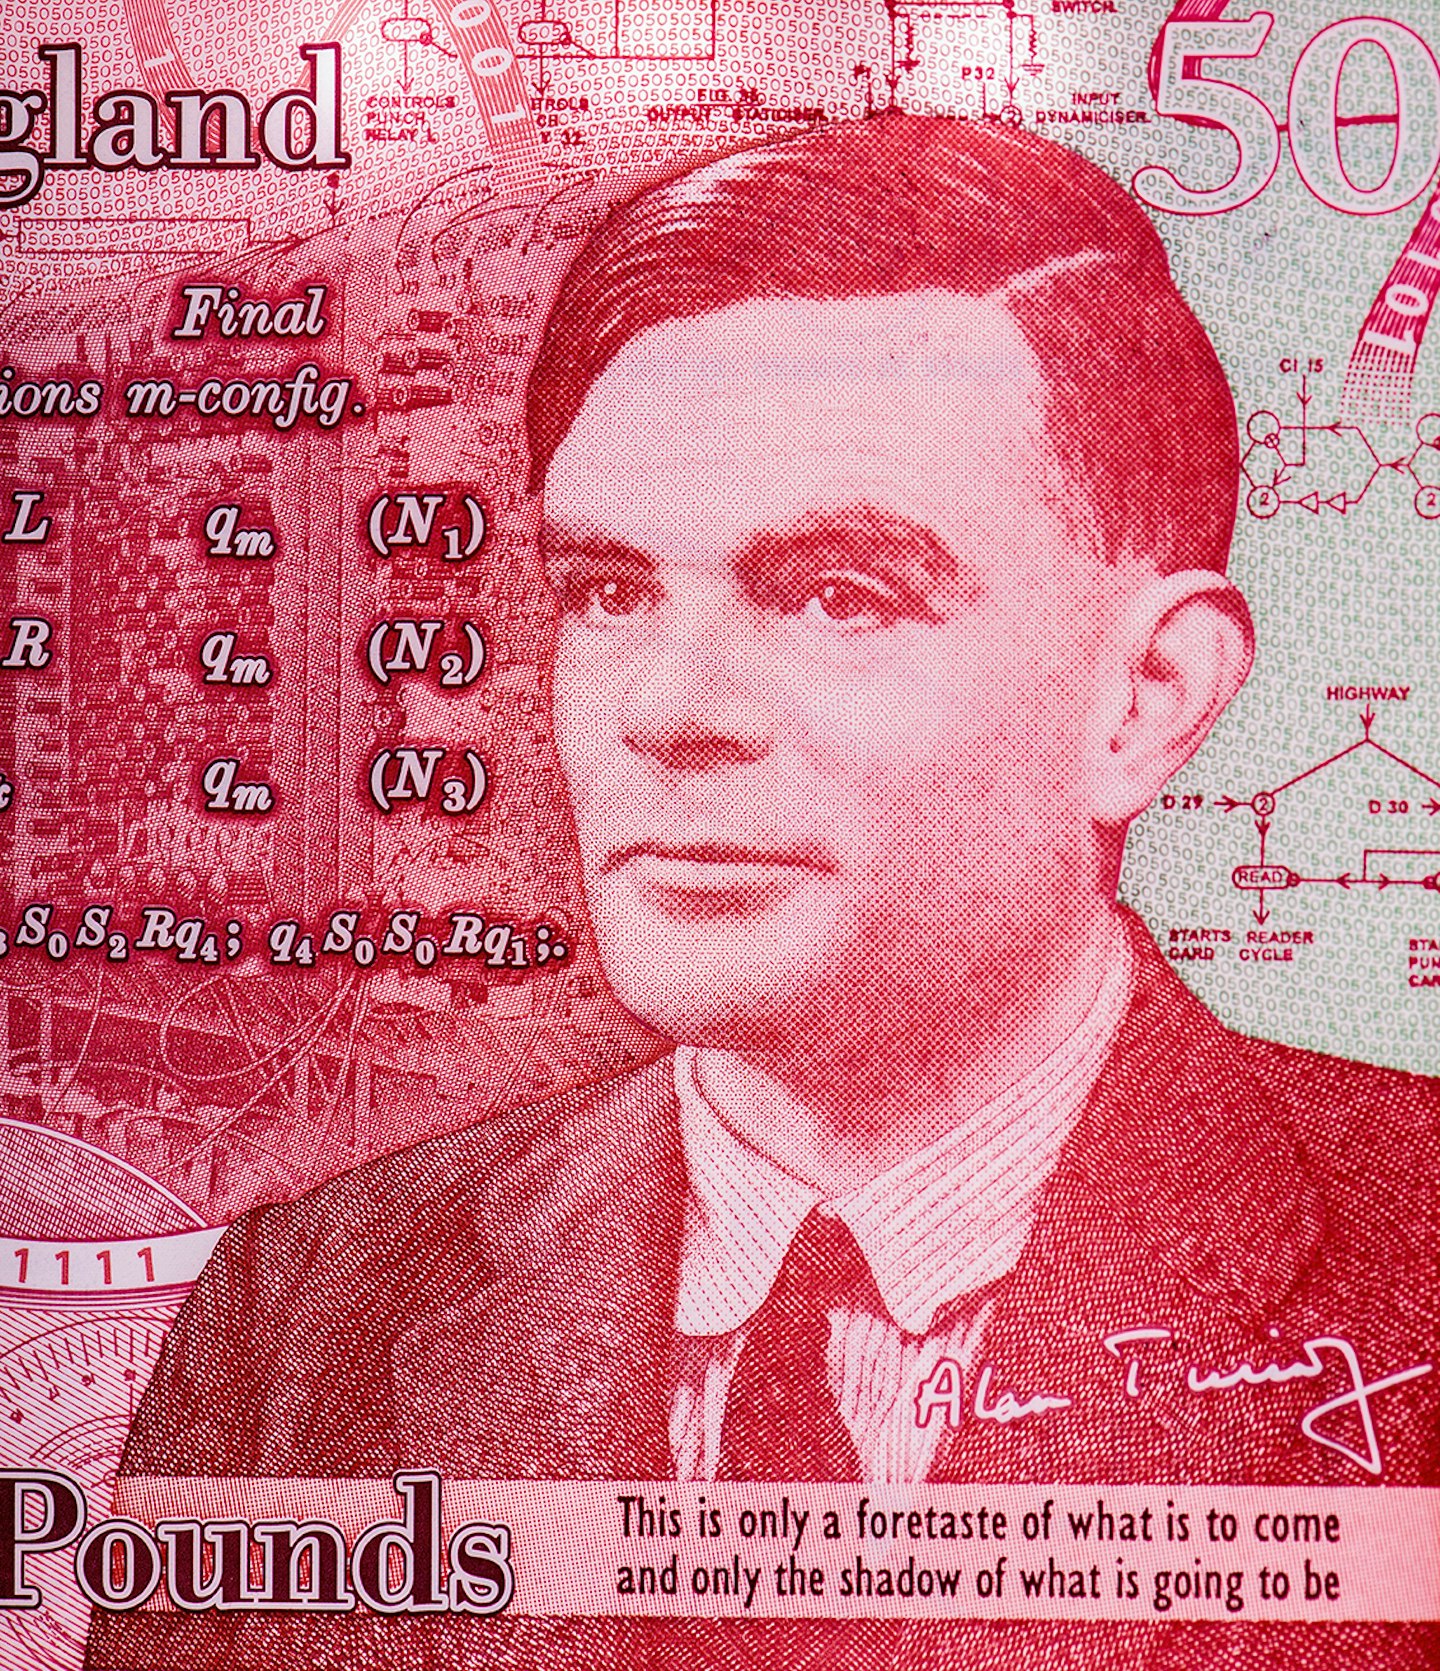 Alan Turing £50 note